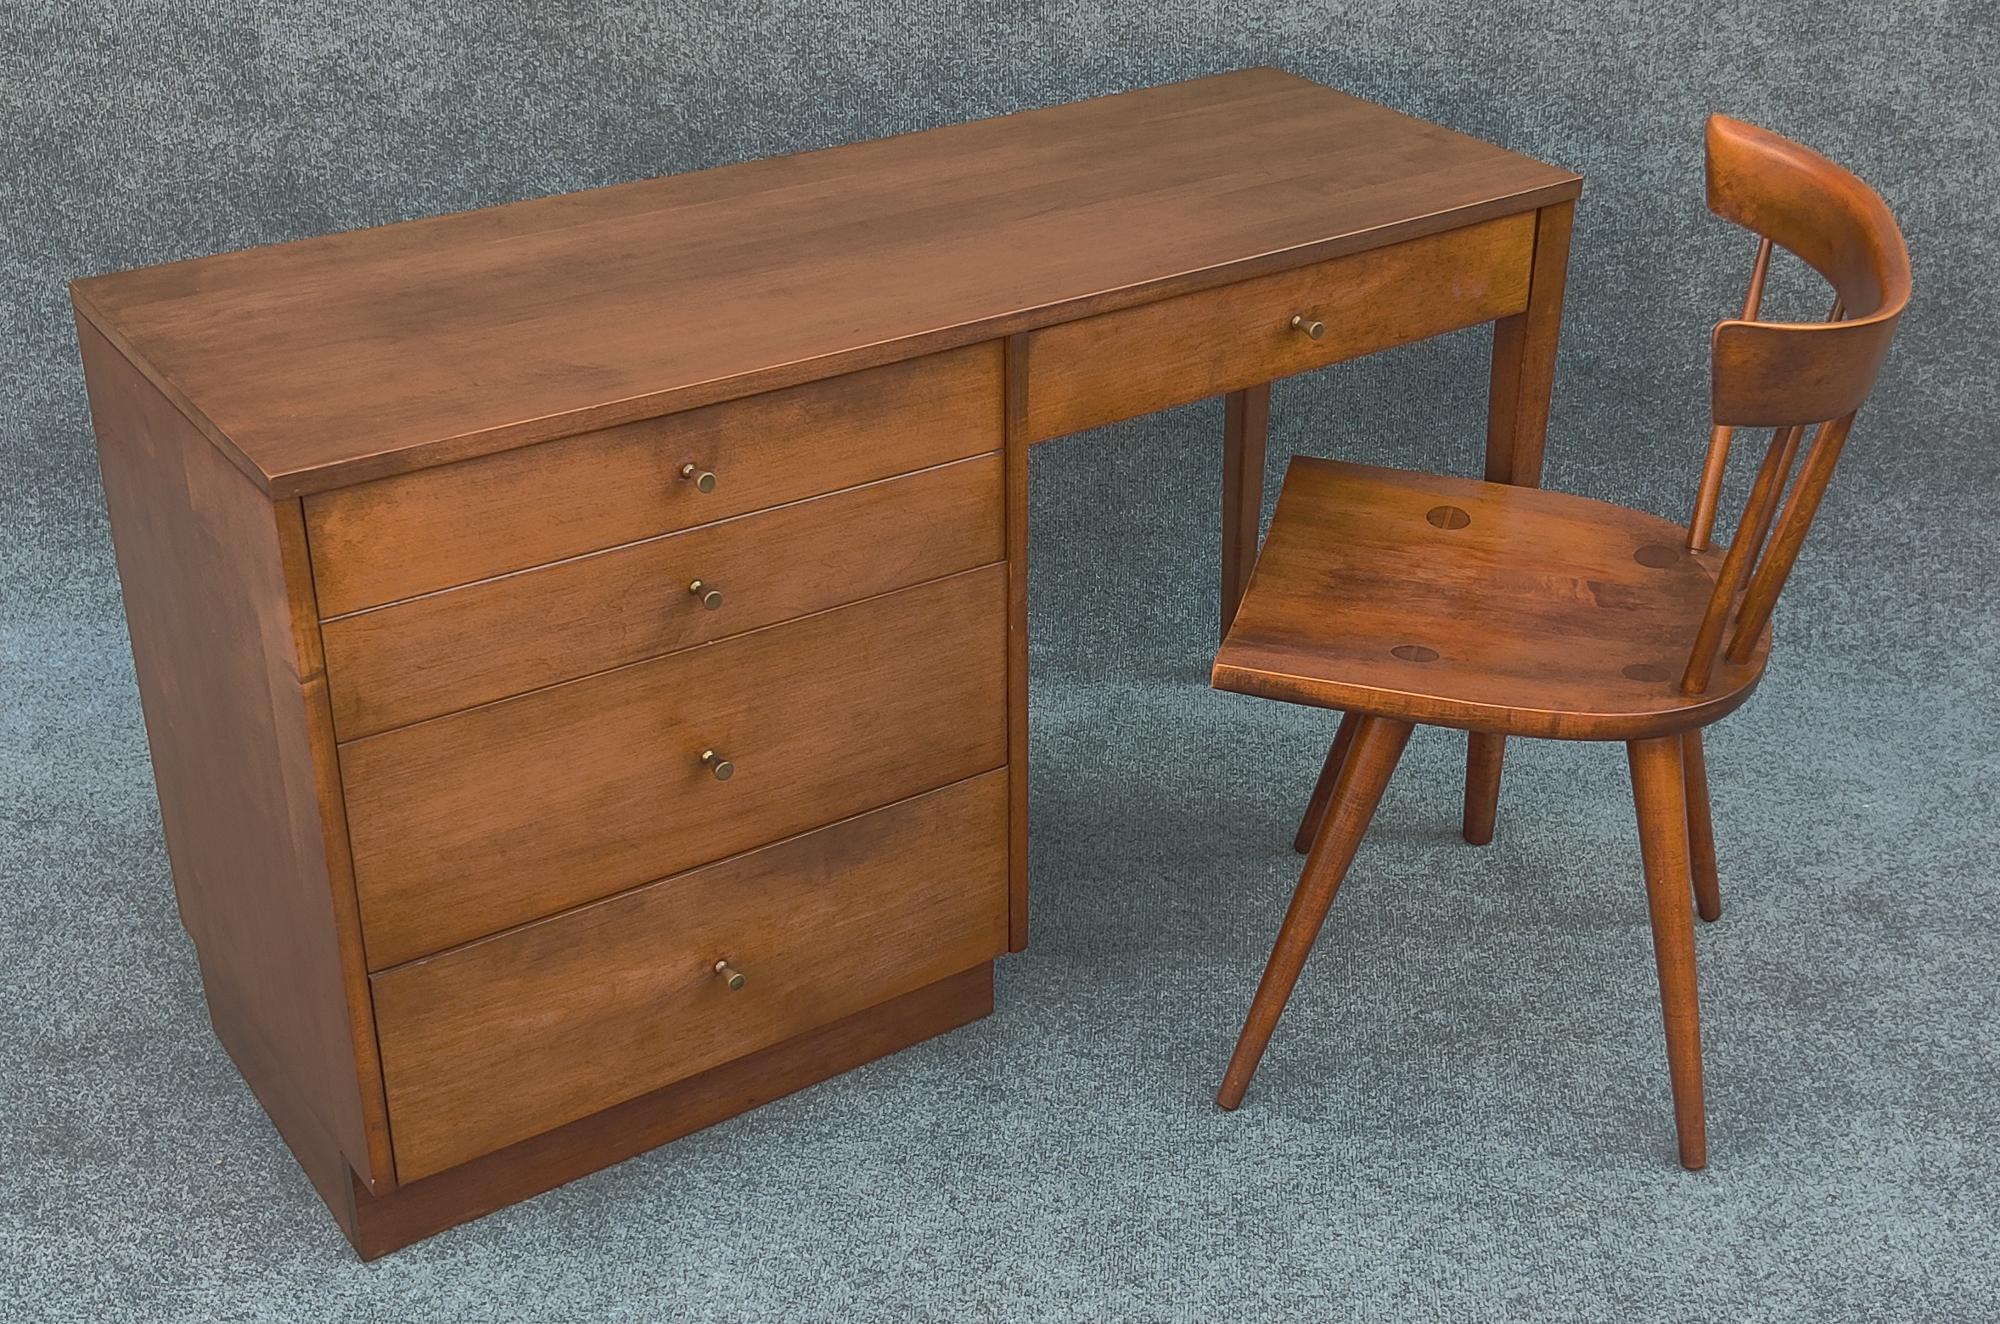 Ein schöner und sehr original erhaltener Schreibtisch mit Stuhl, entworfen von Paul McCobb und gebaut von Winchendon Furniture Co, ca. 1950er Jahre. Sie sind Teil der Planner Design Group, die für ihre schlichten, klaren Linien und ihre hochwertige